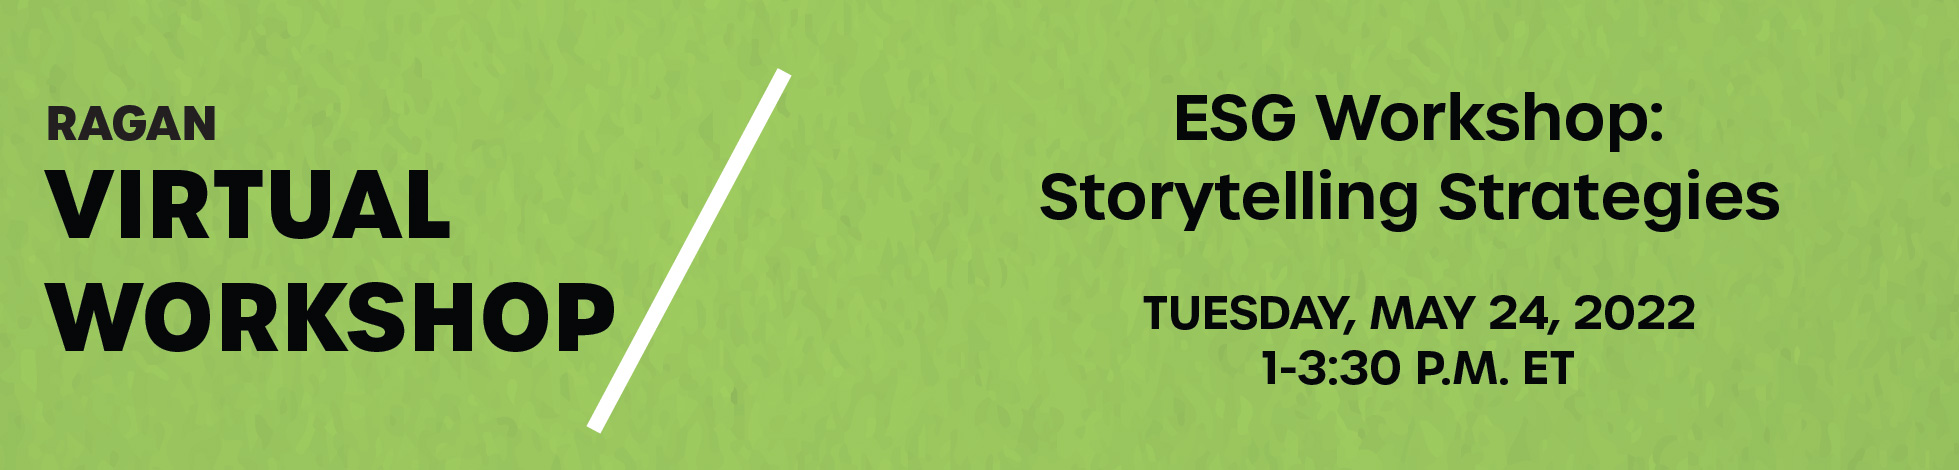 ESG Workshop: Storytelling Strategies